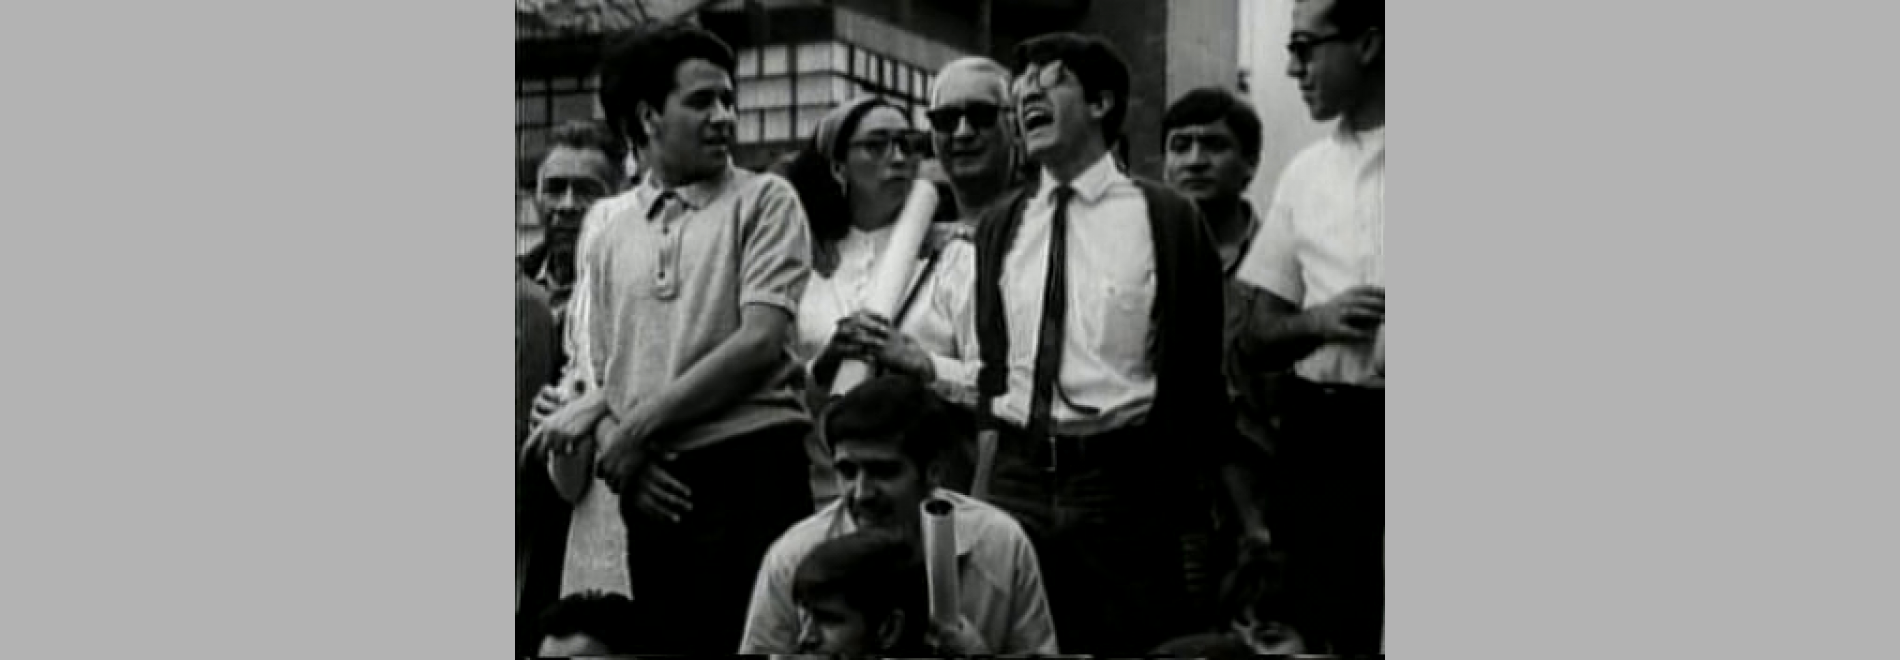 El grito (Leobardo López Arretche, 1968)